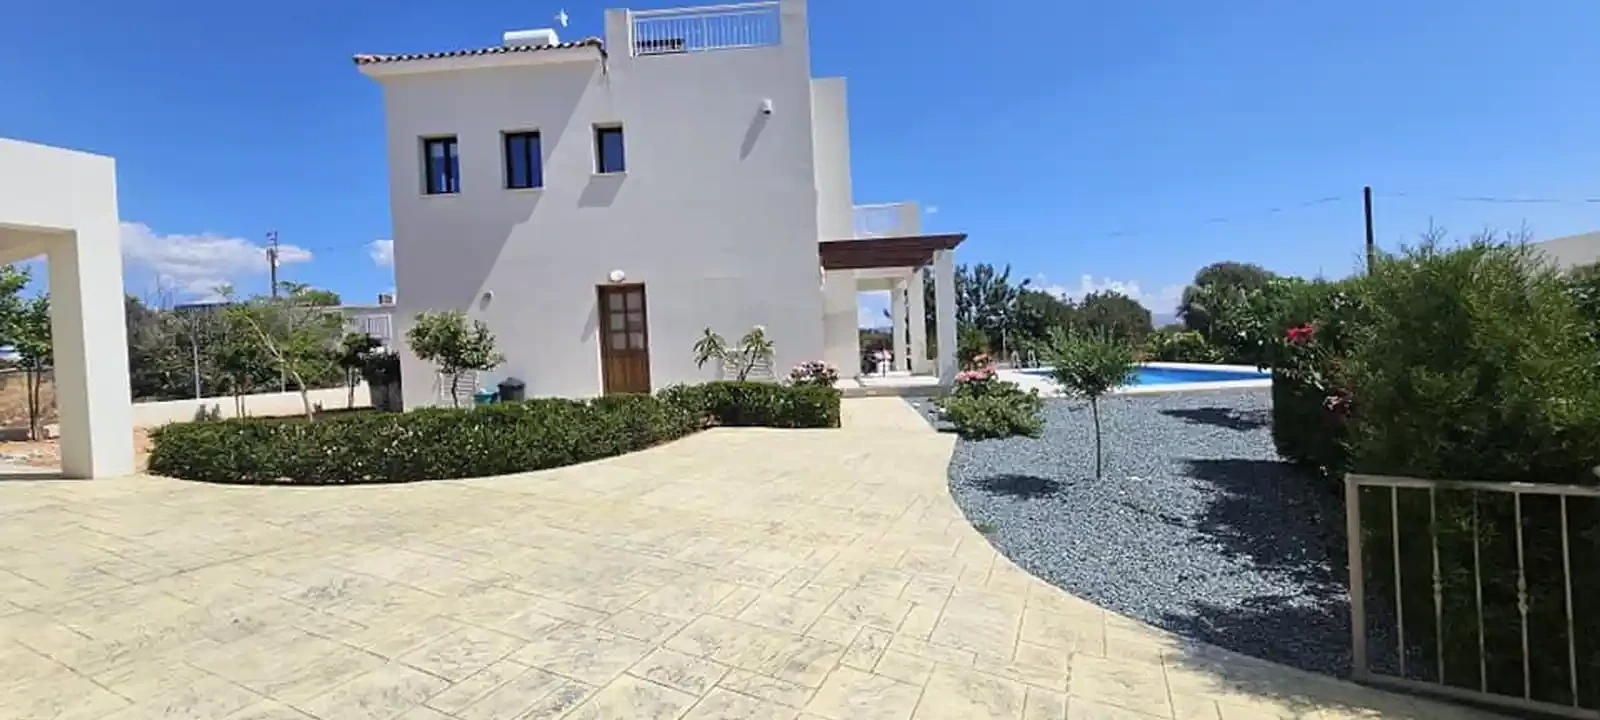 3-bedroom villa to rent €1.900, image 1